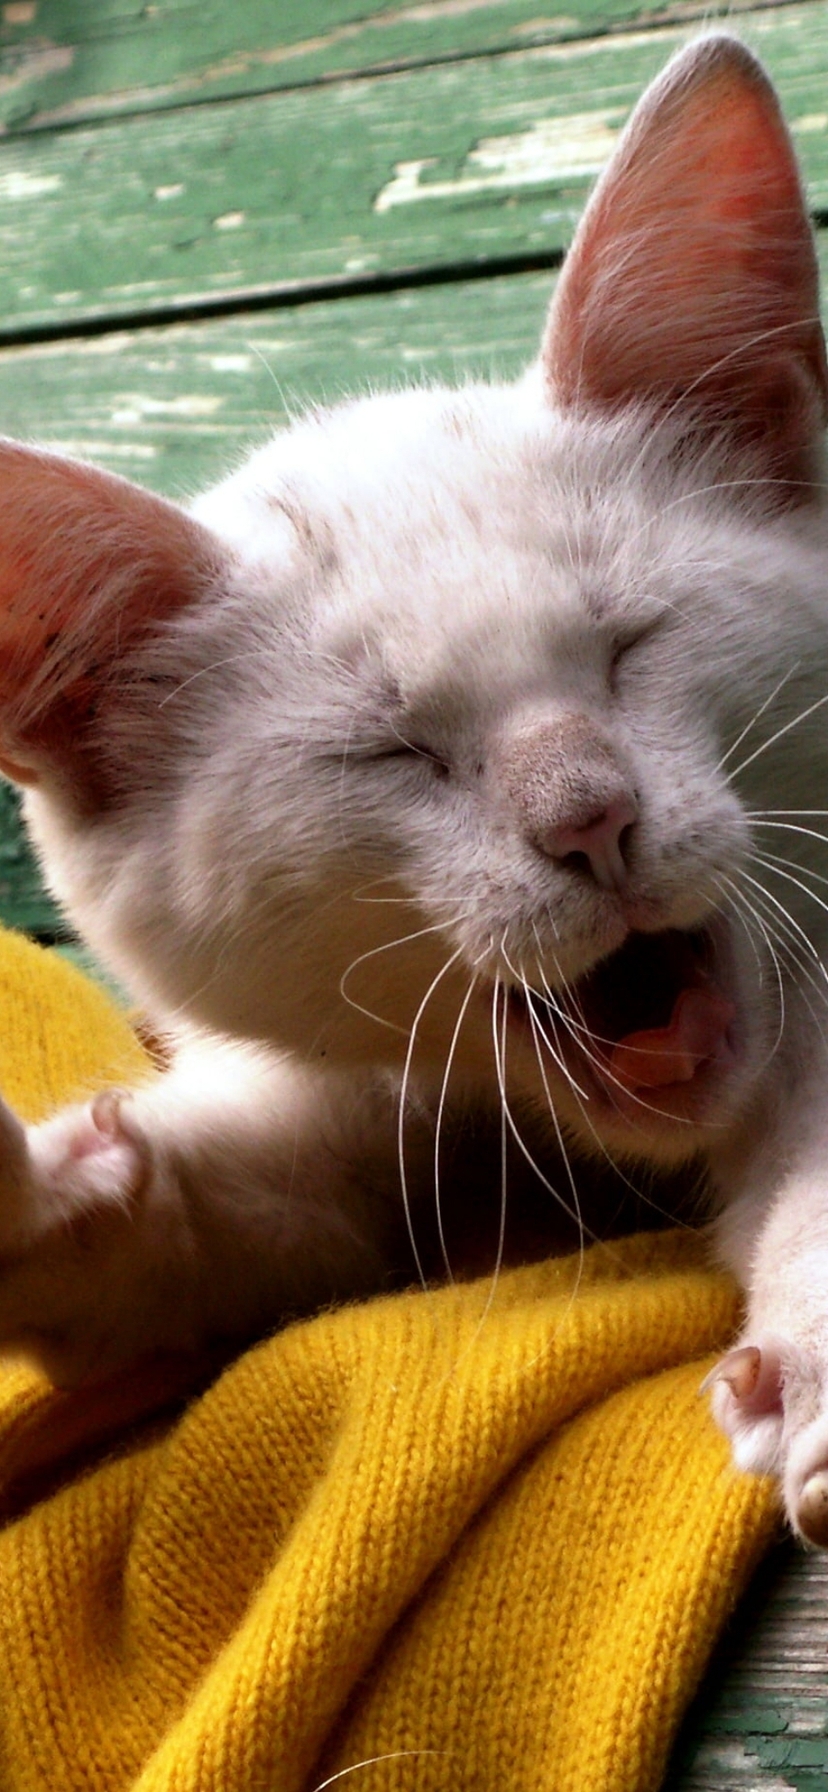 Картинка: Кошка, котёнок, белый, зевает, потягивается